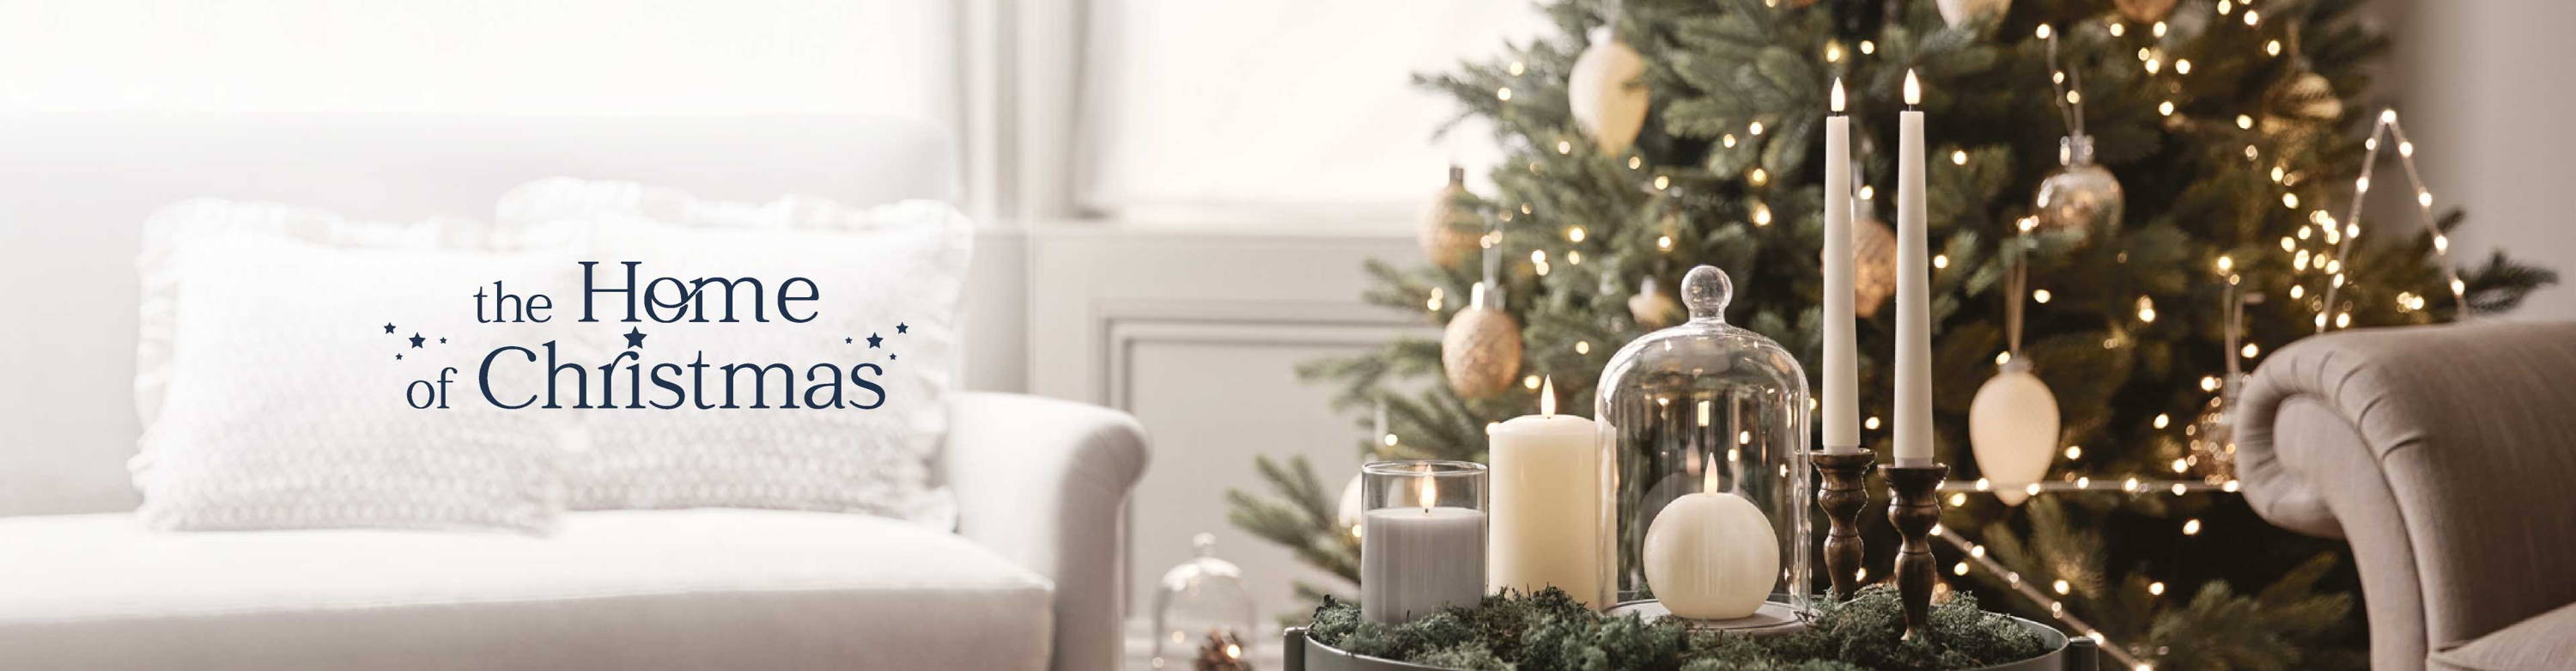 Verschiedene TruGlow LED Kerzen und eine Glasglocke auf einem Beistelltisch im Wohnzimmer, dahinter ein beleuchteter Weihnachtsbaum